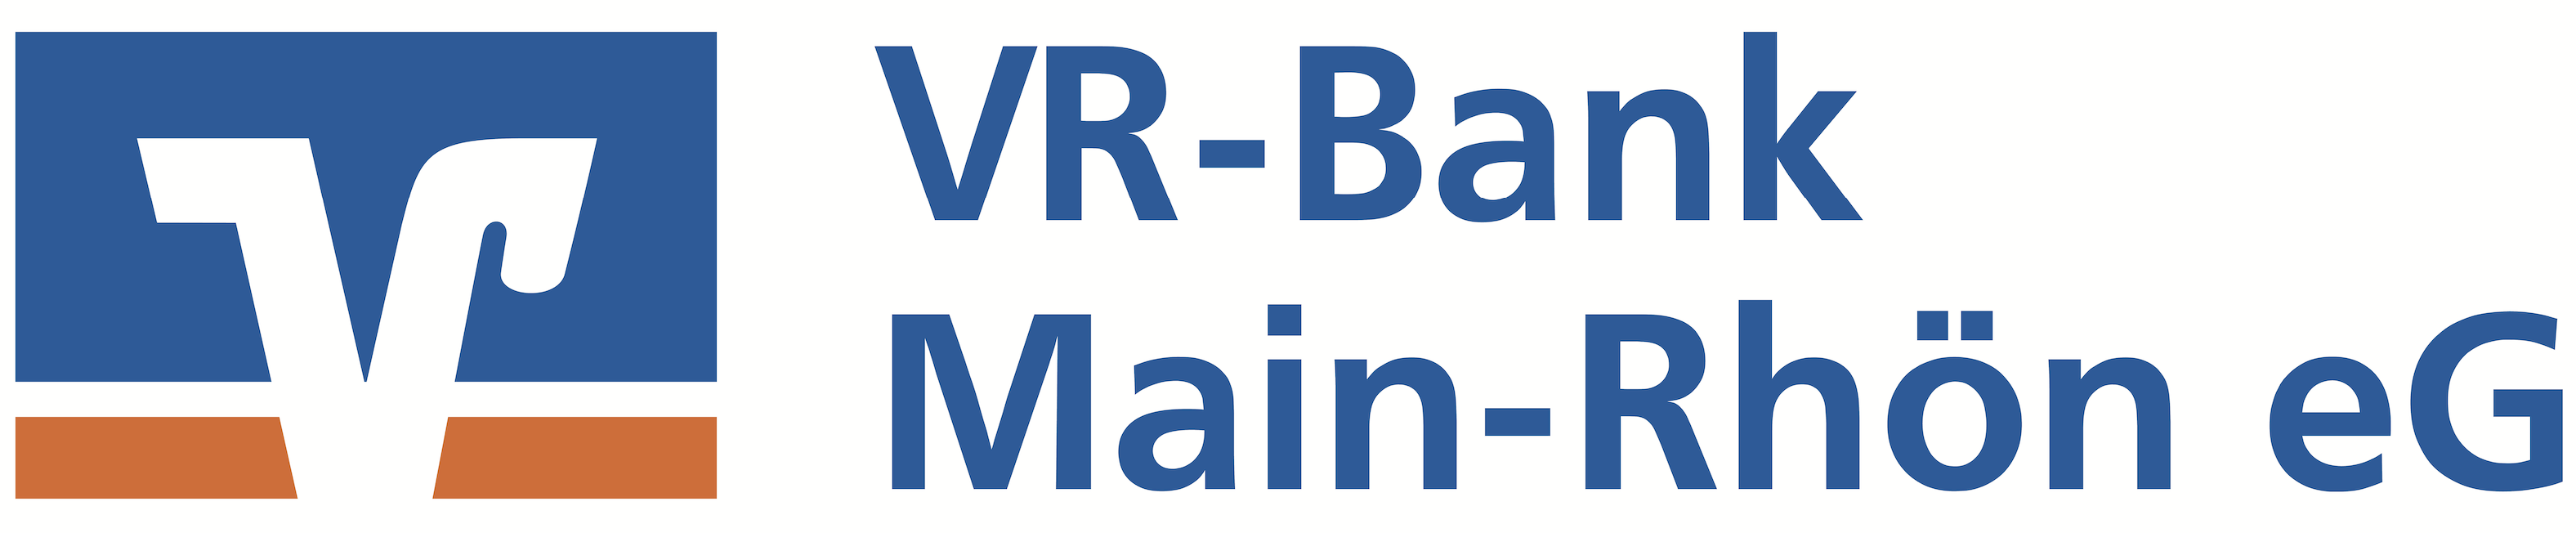 VR-Bank Main-Rhön